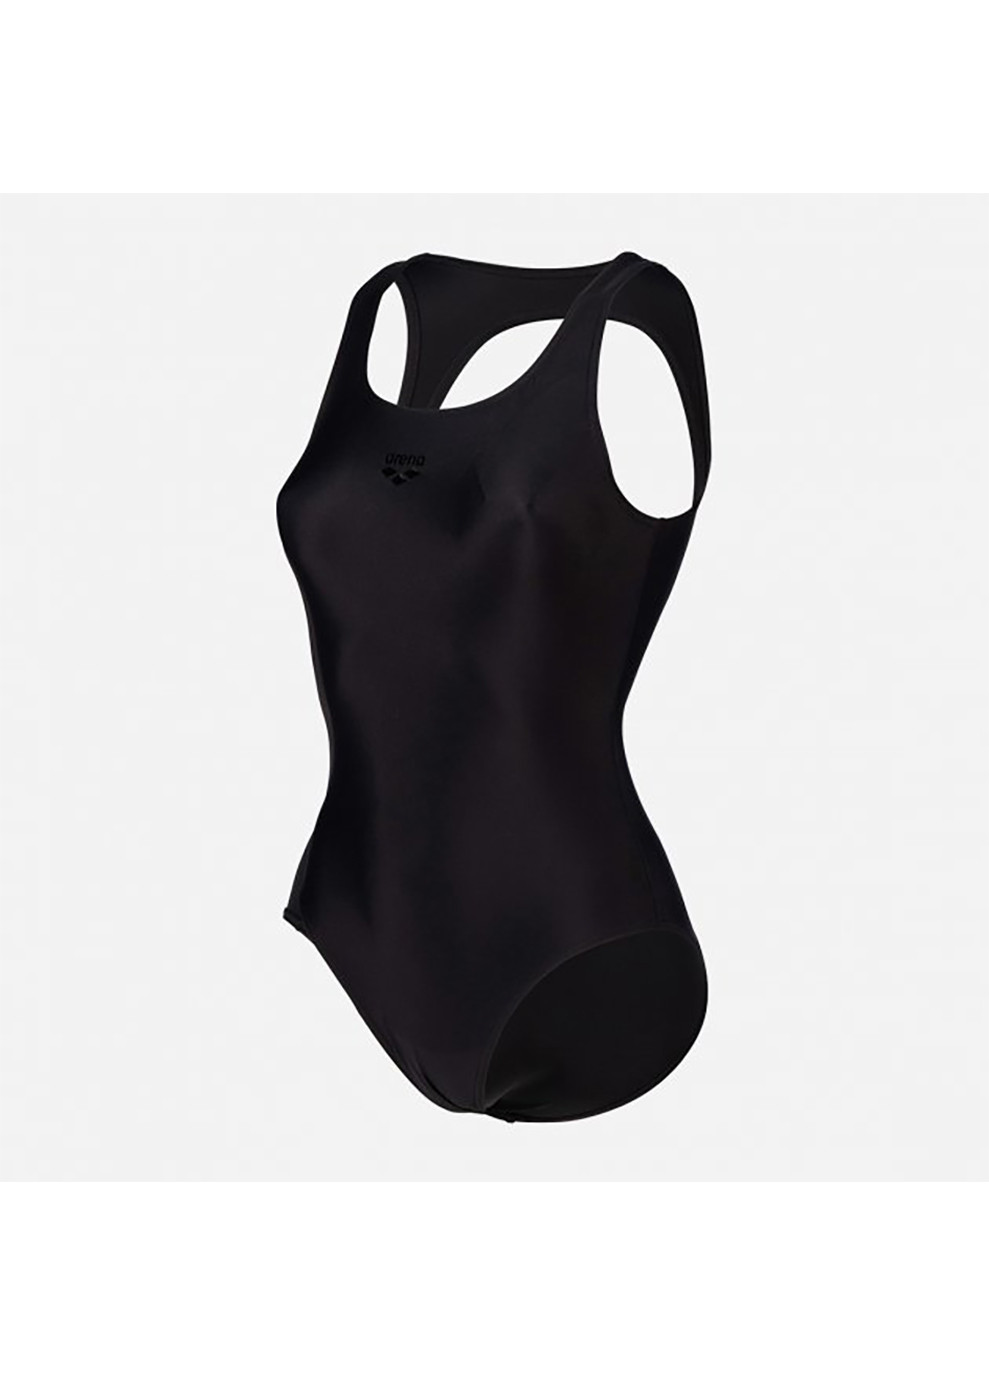 Черный демисезонный купальник женский закрытый solid o back swimsuit черный Arena